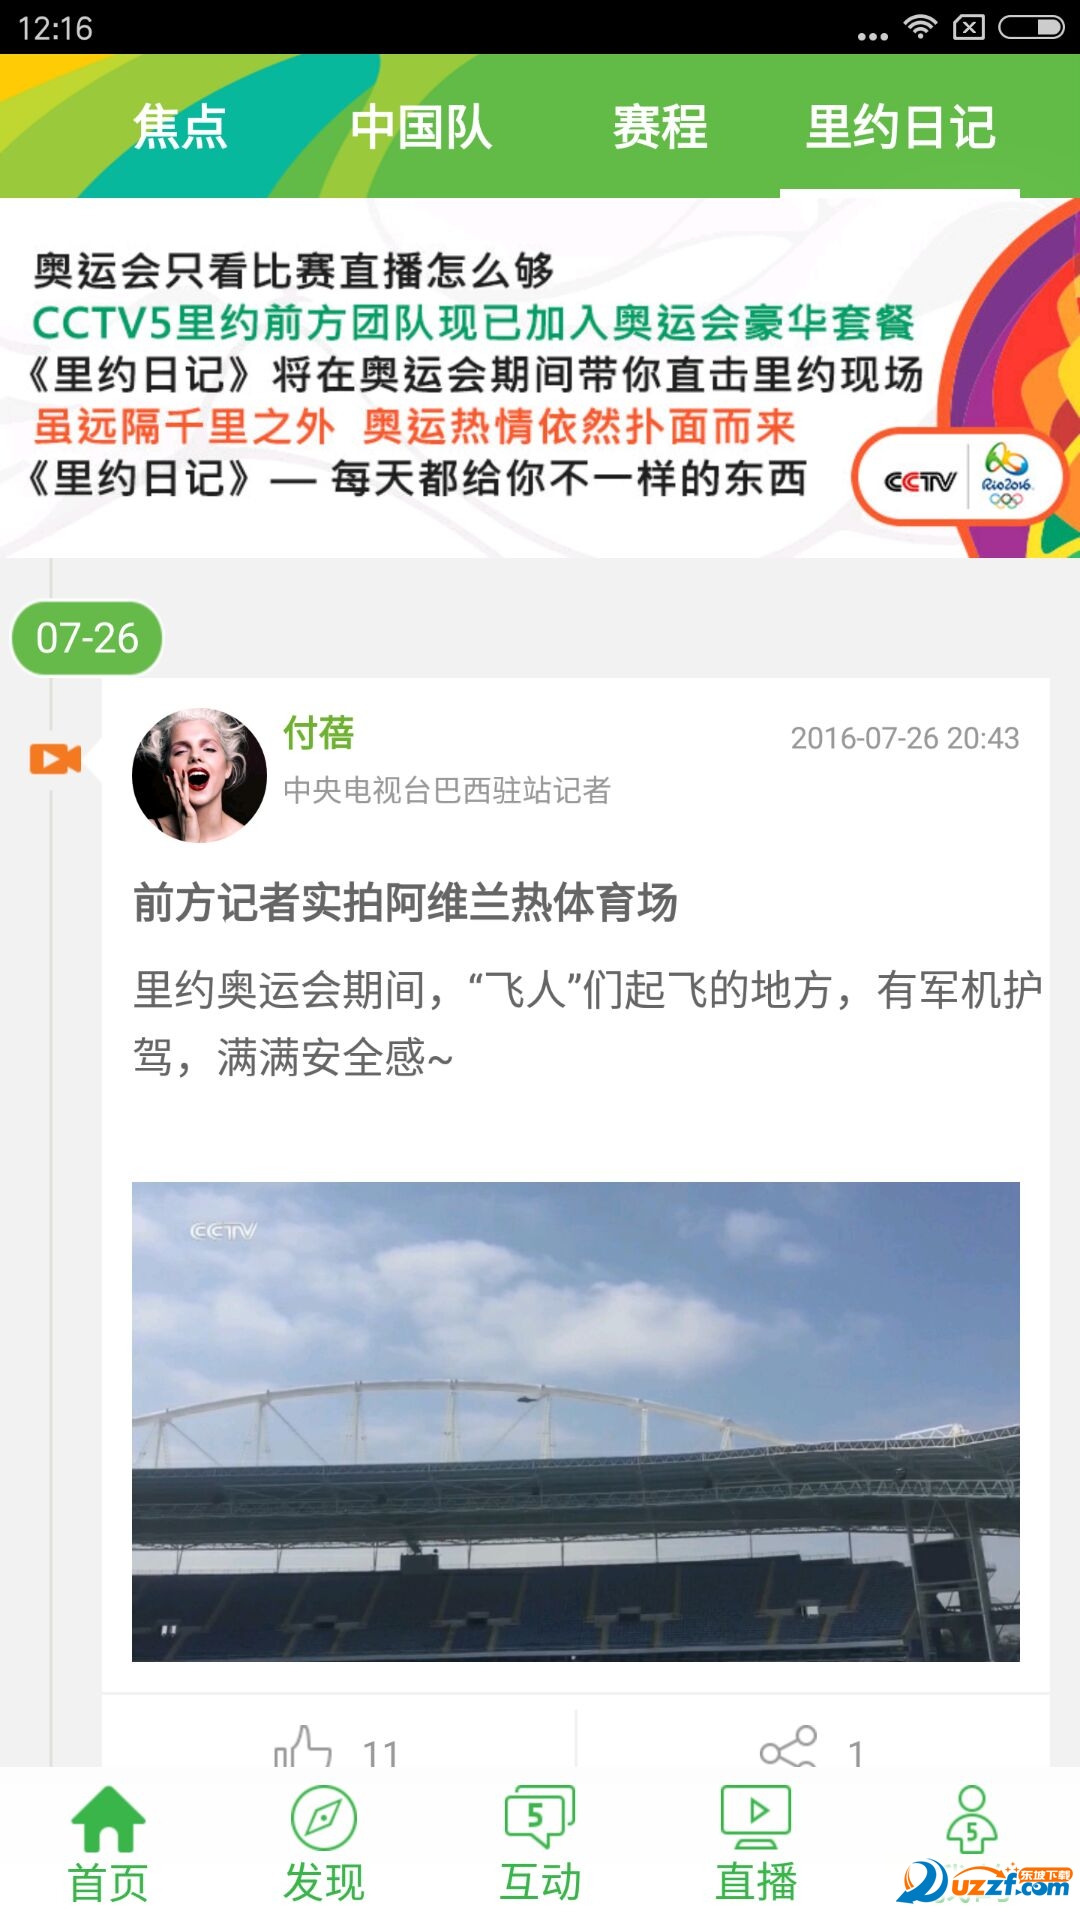 CCTV5奥运版|CCTV5 app里约奥运手机客户端